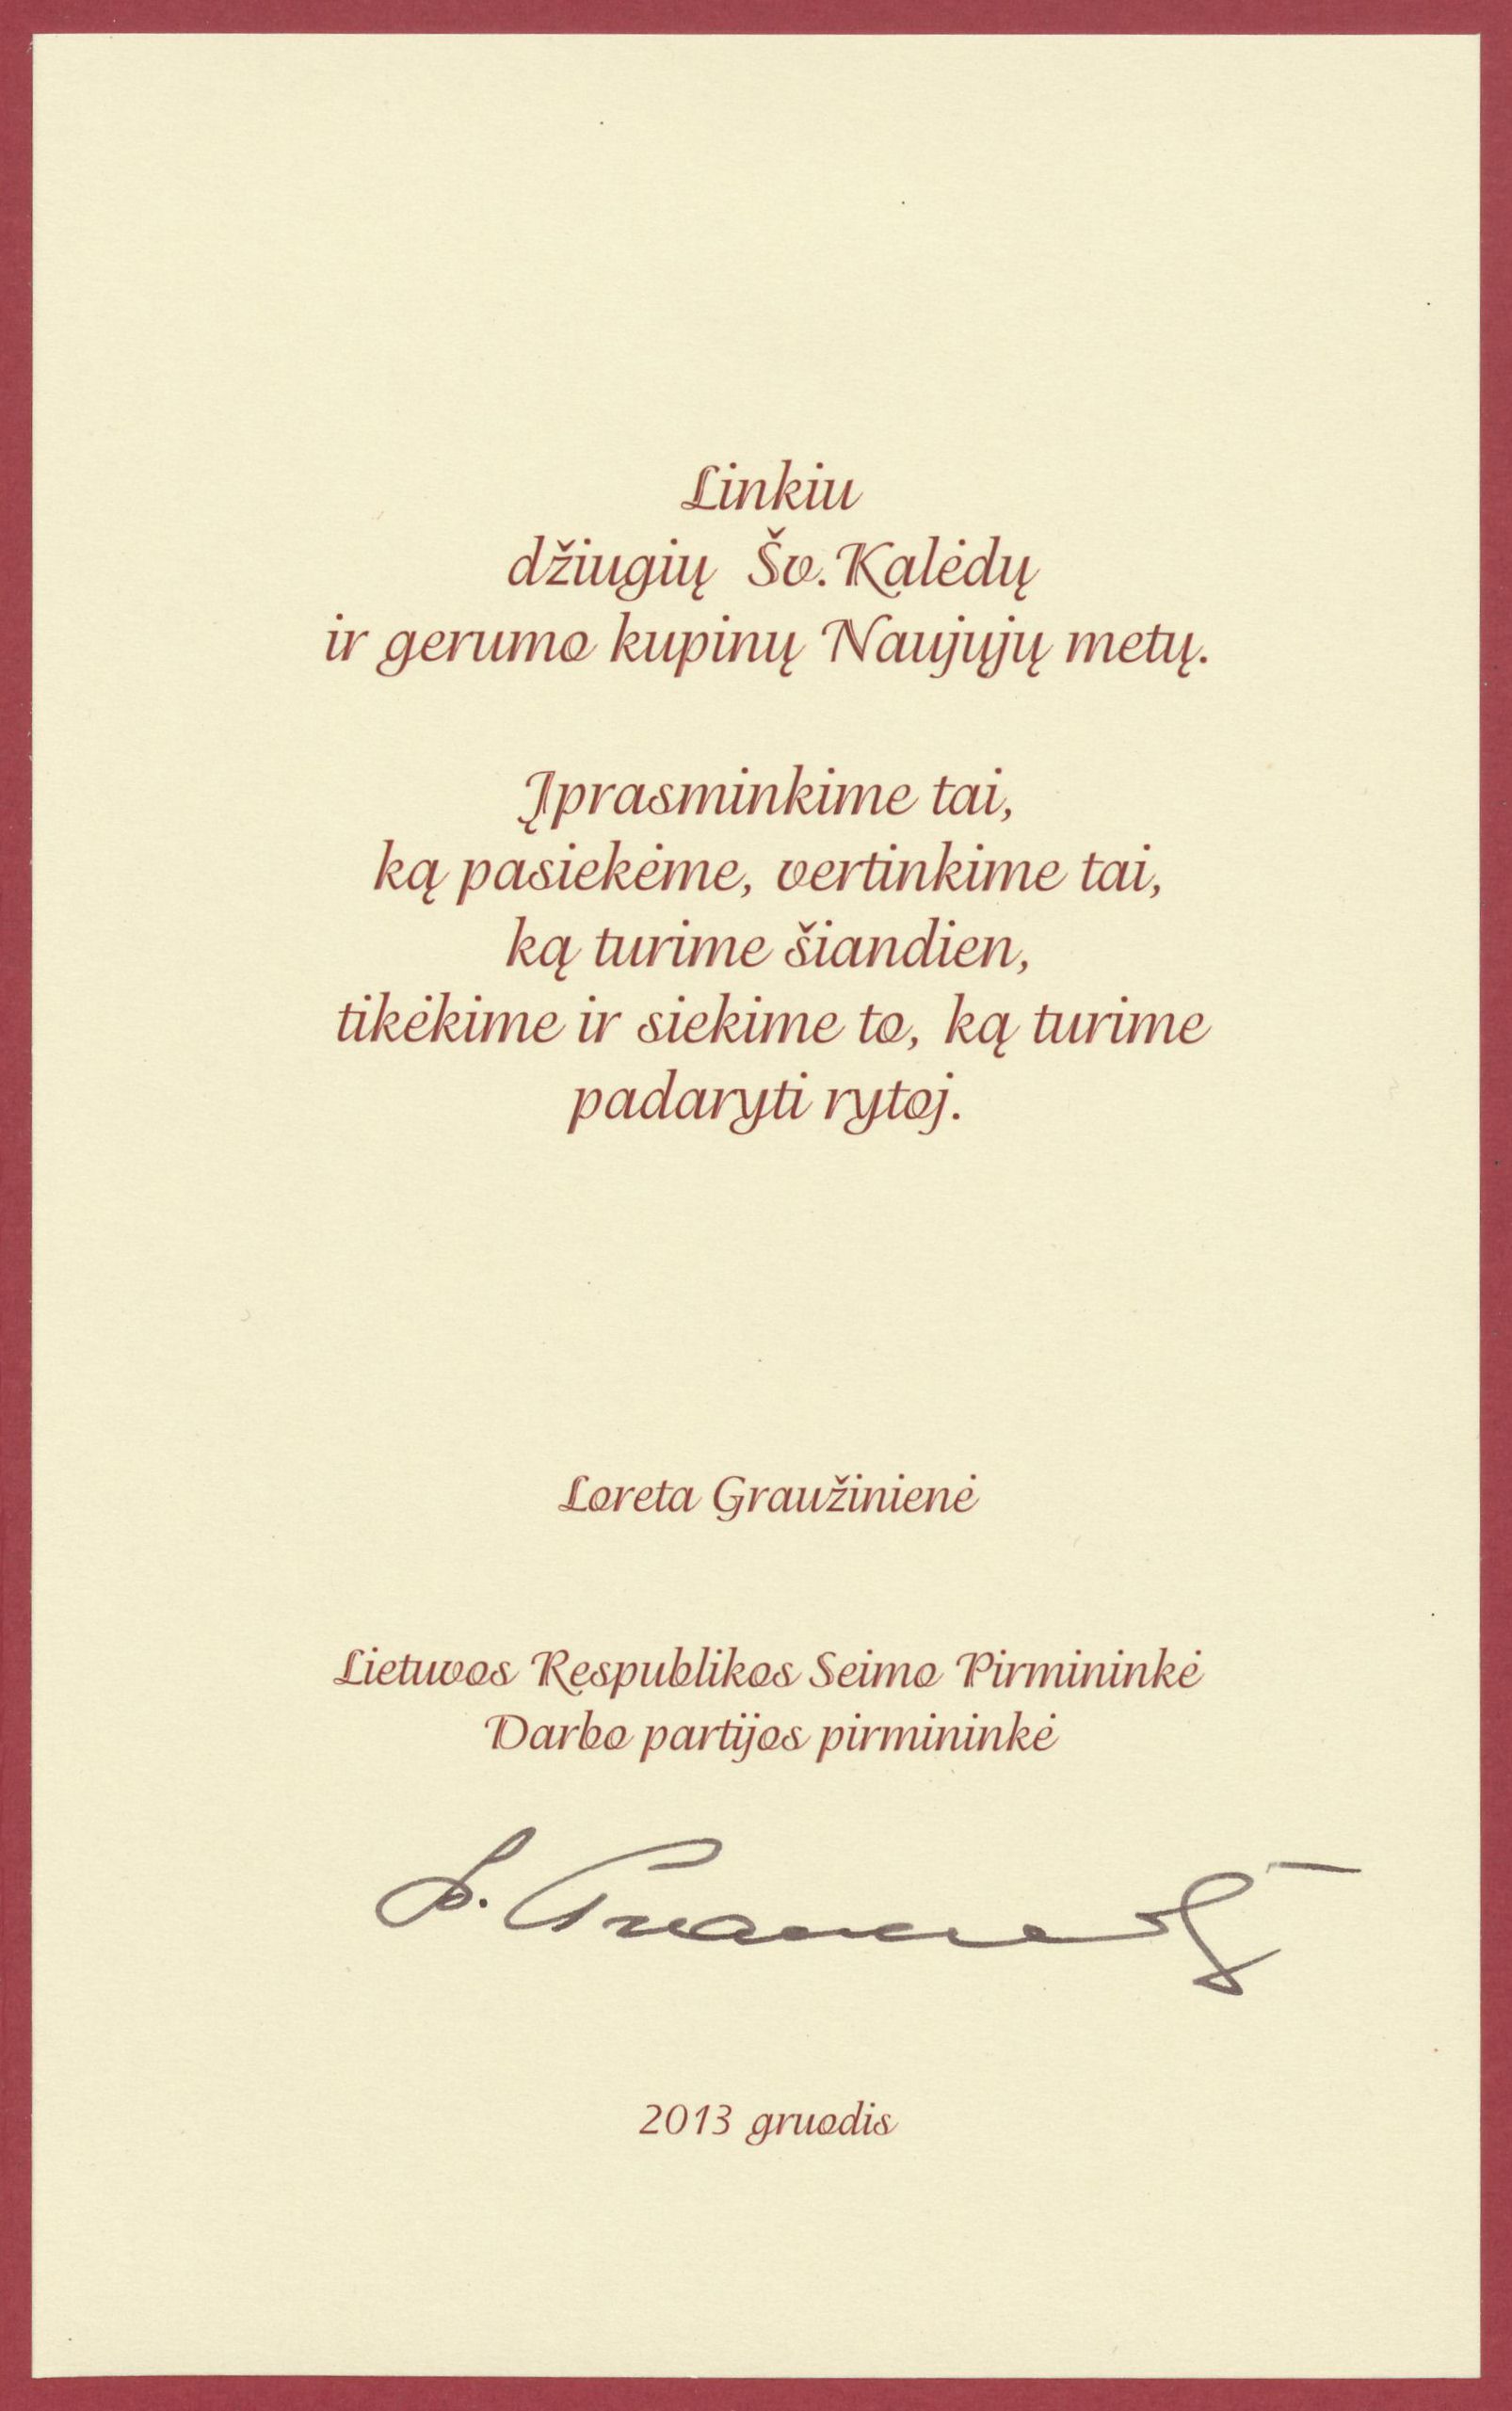 Lietuvos Respublikos Seimo pirmininkės Loretos Graužinienės sveikinimas